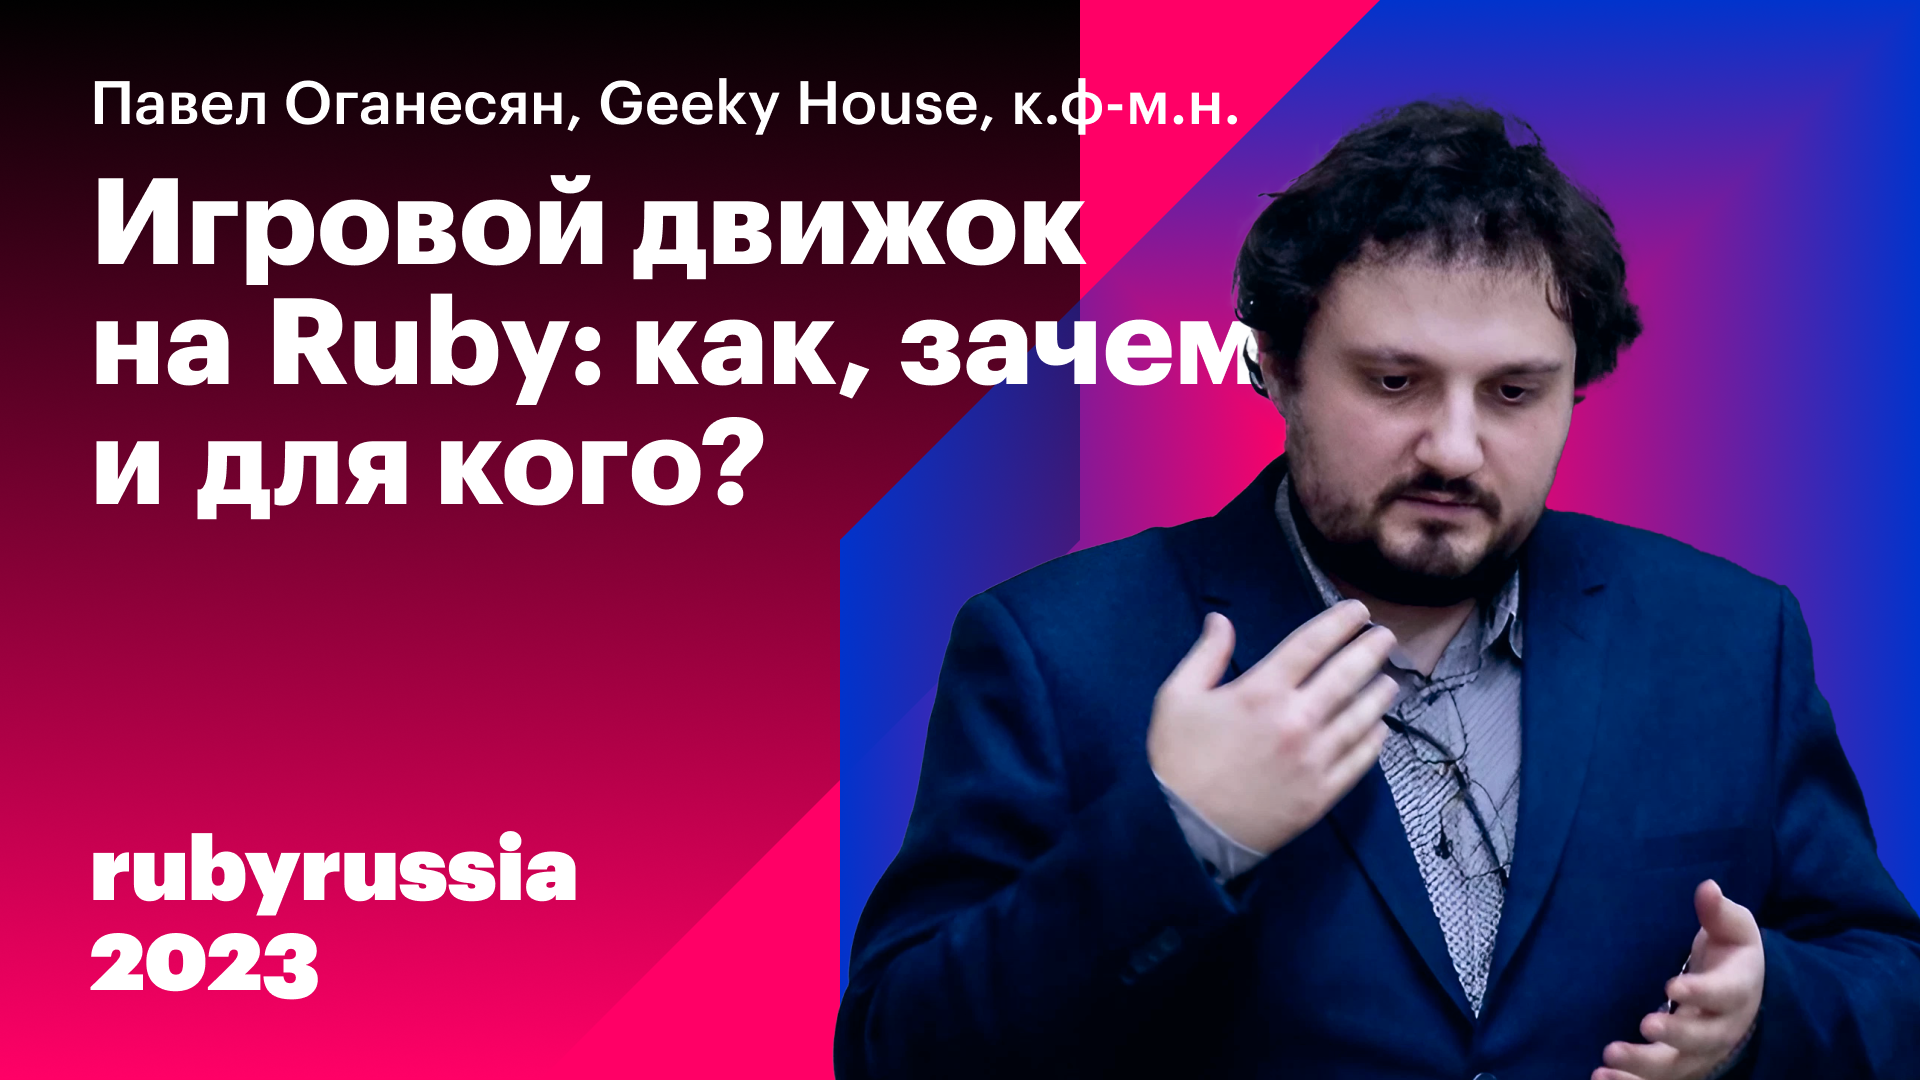 Игровой движок на Ruby: как, зачем и для кого? — Павел Оганесян, Geeky House. Ruby Russia 2023